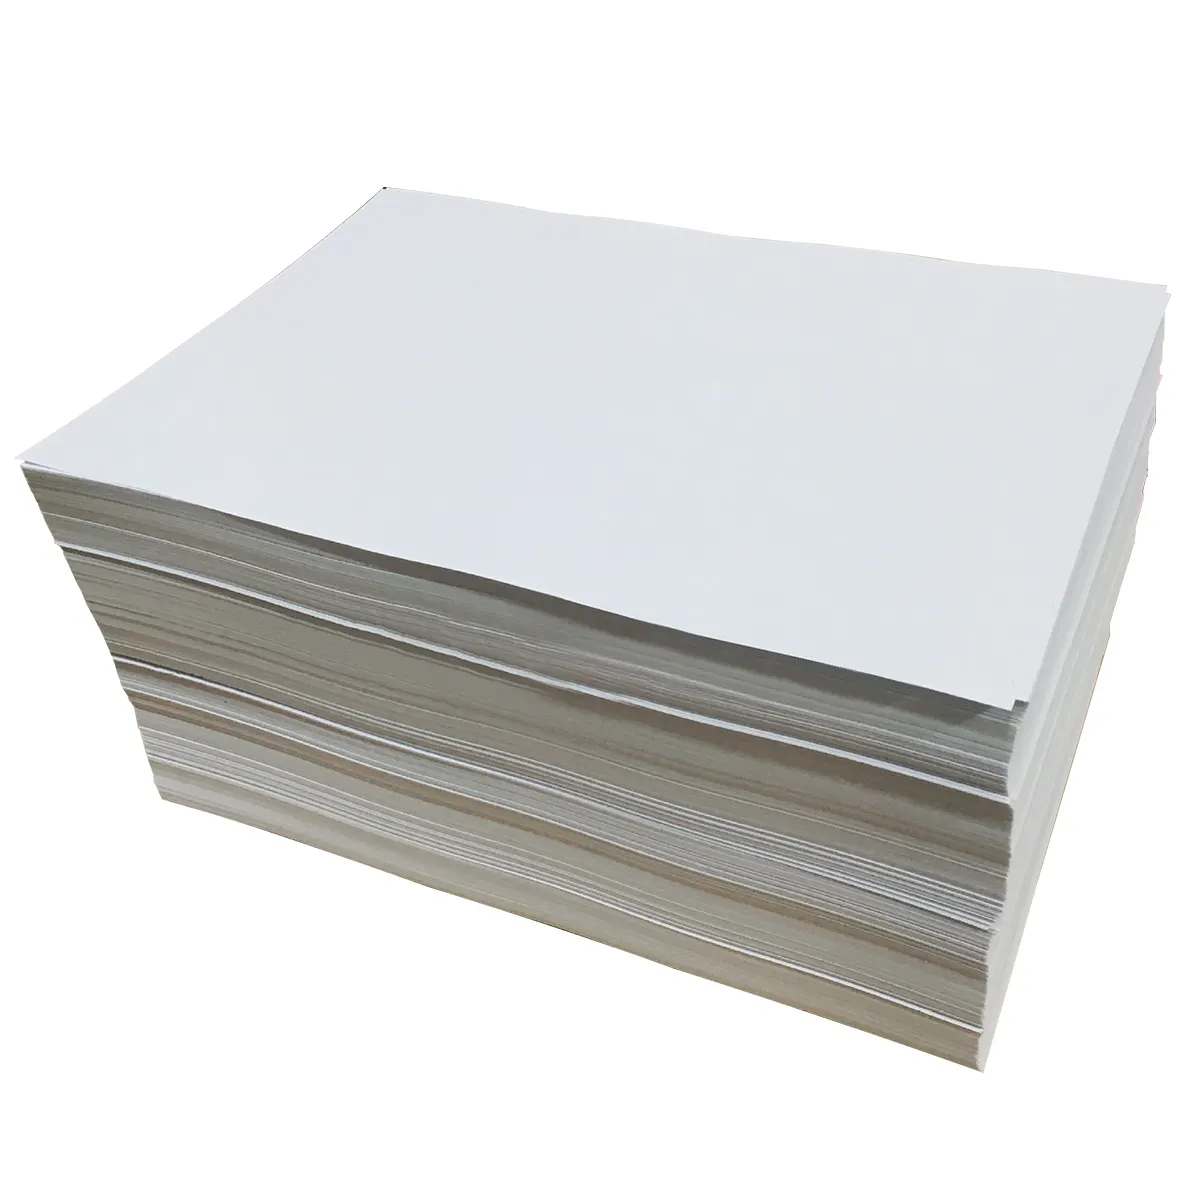 Yüksek sıcaklığa dayanıklı kağıt levha beyaz yapışkanlı kağıt silikon kaplı yapışkanlı kağıt